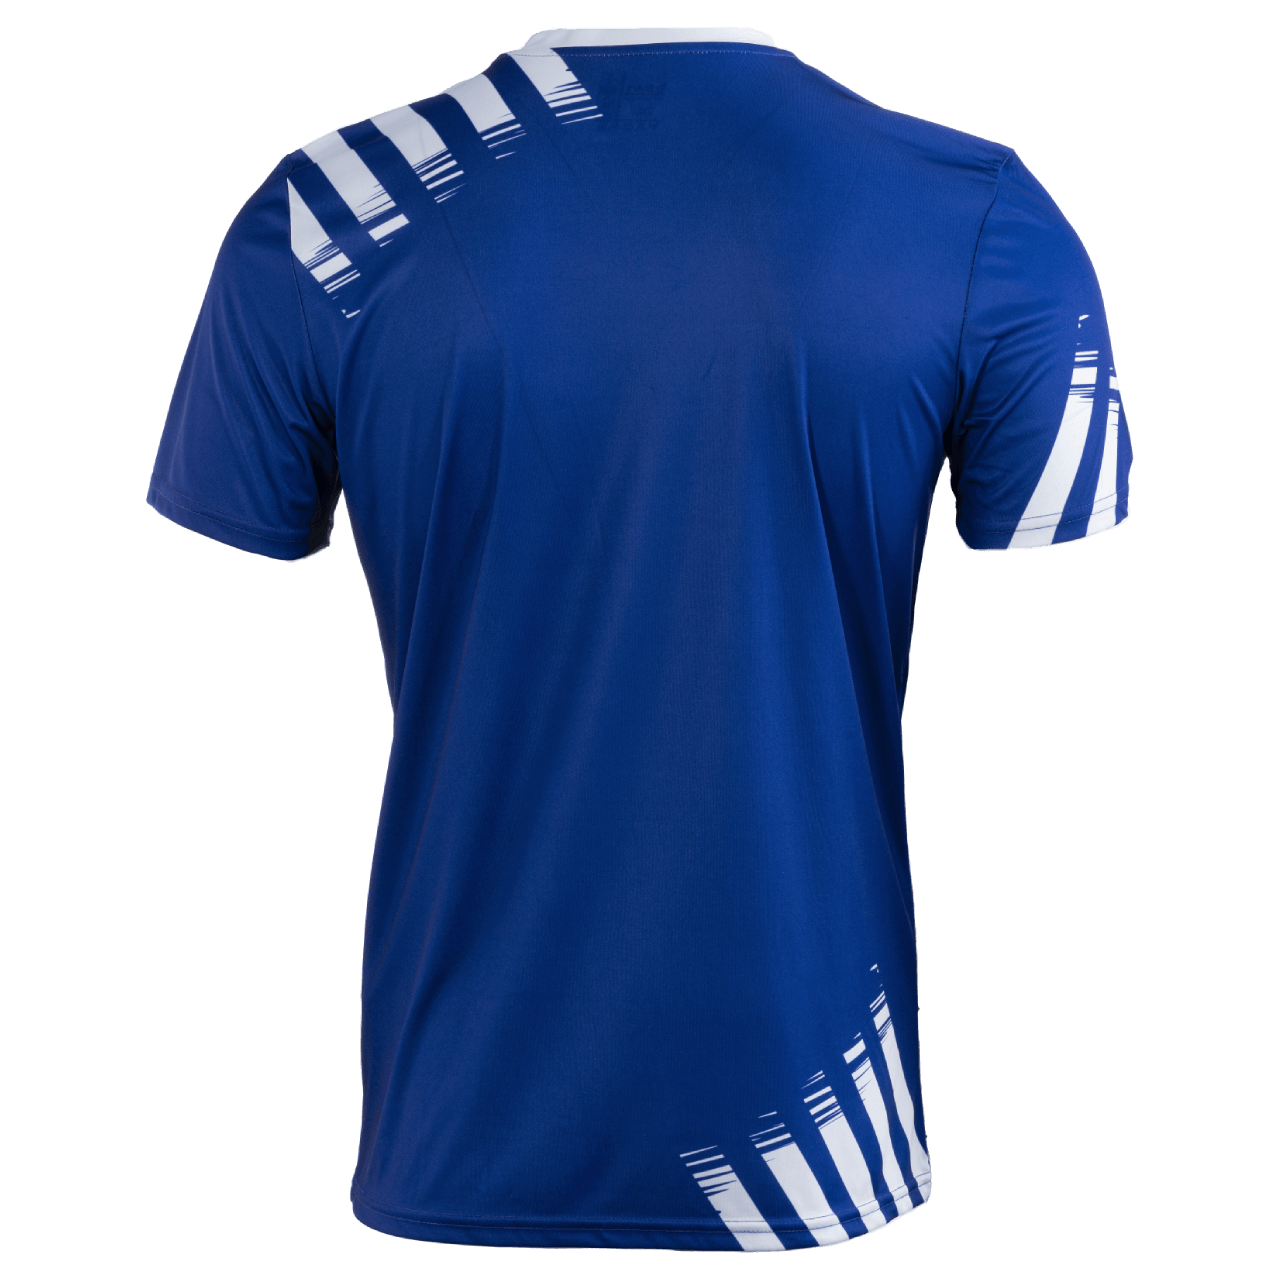 Rückseite des BWT One Fußballtriko Shirt in blau mit weißen Akzenten